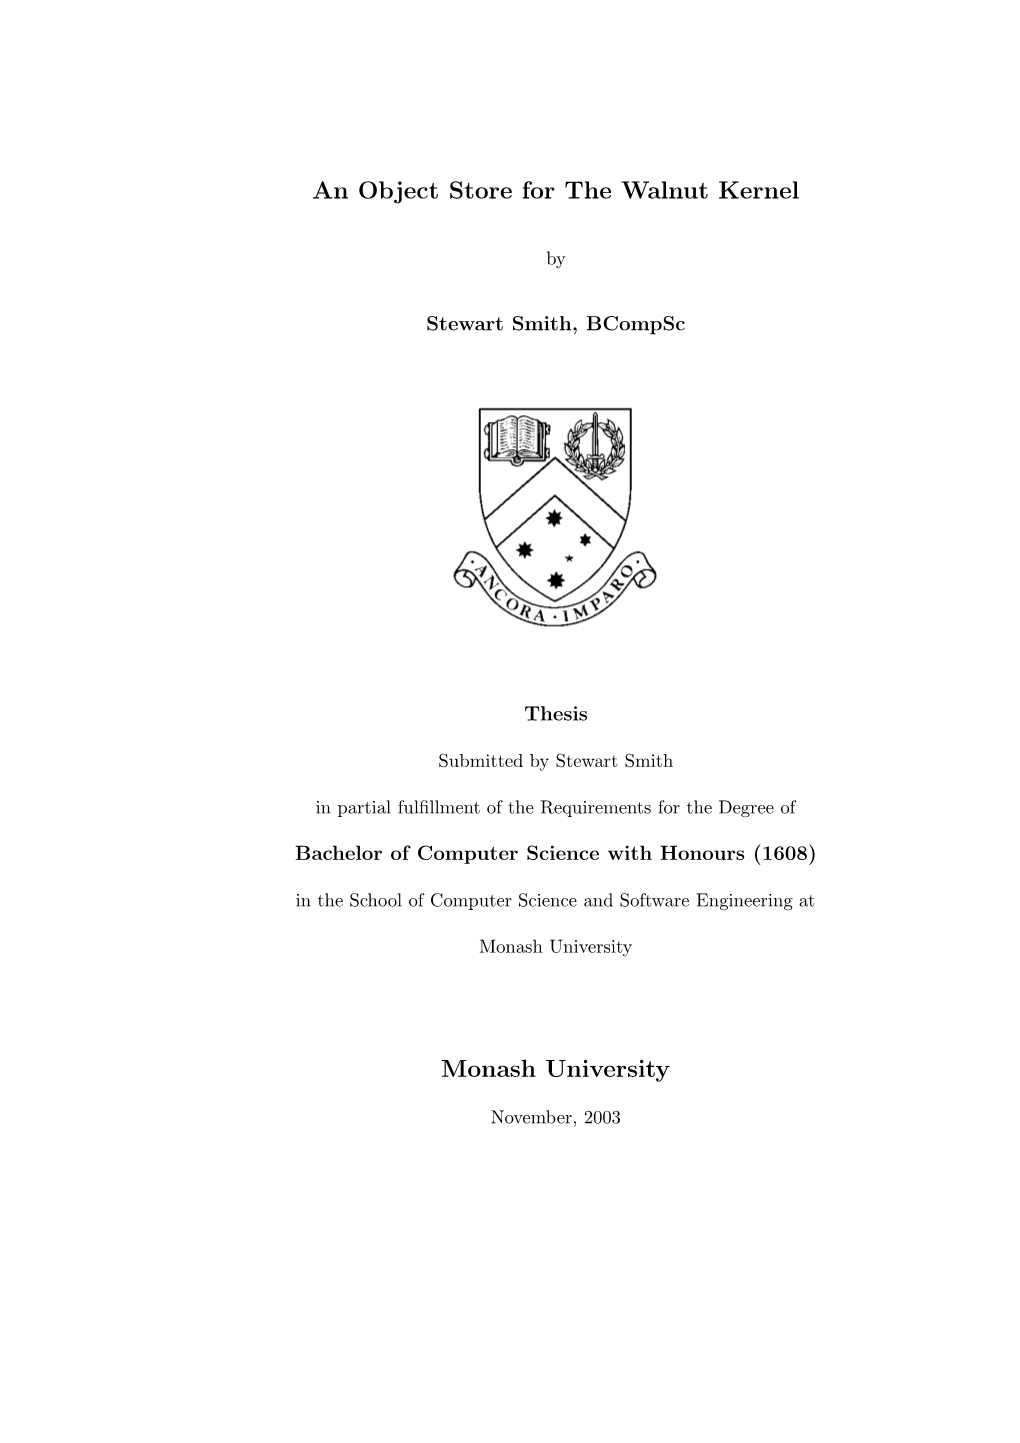 Thesis (759K PDF)